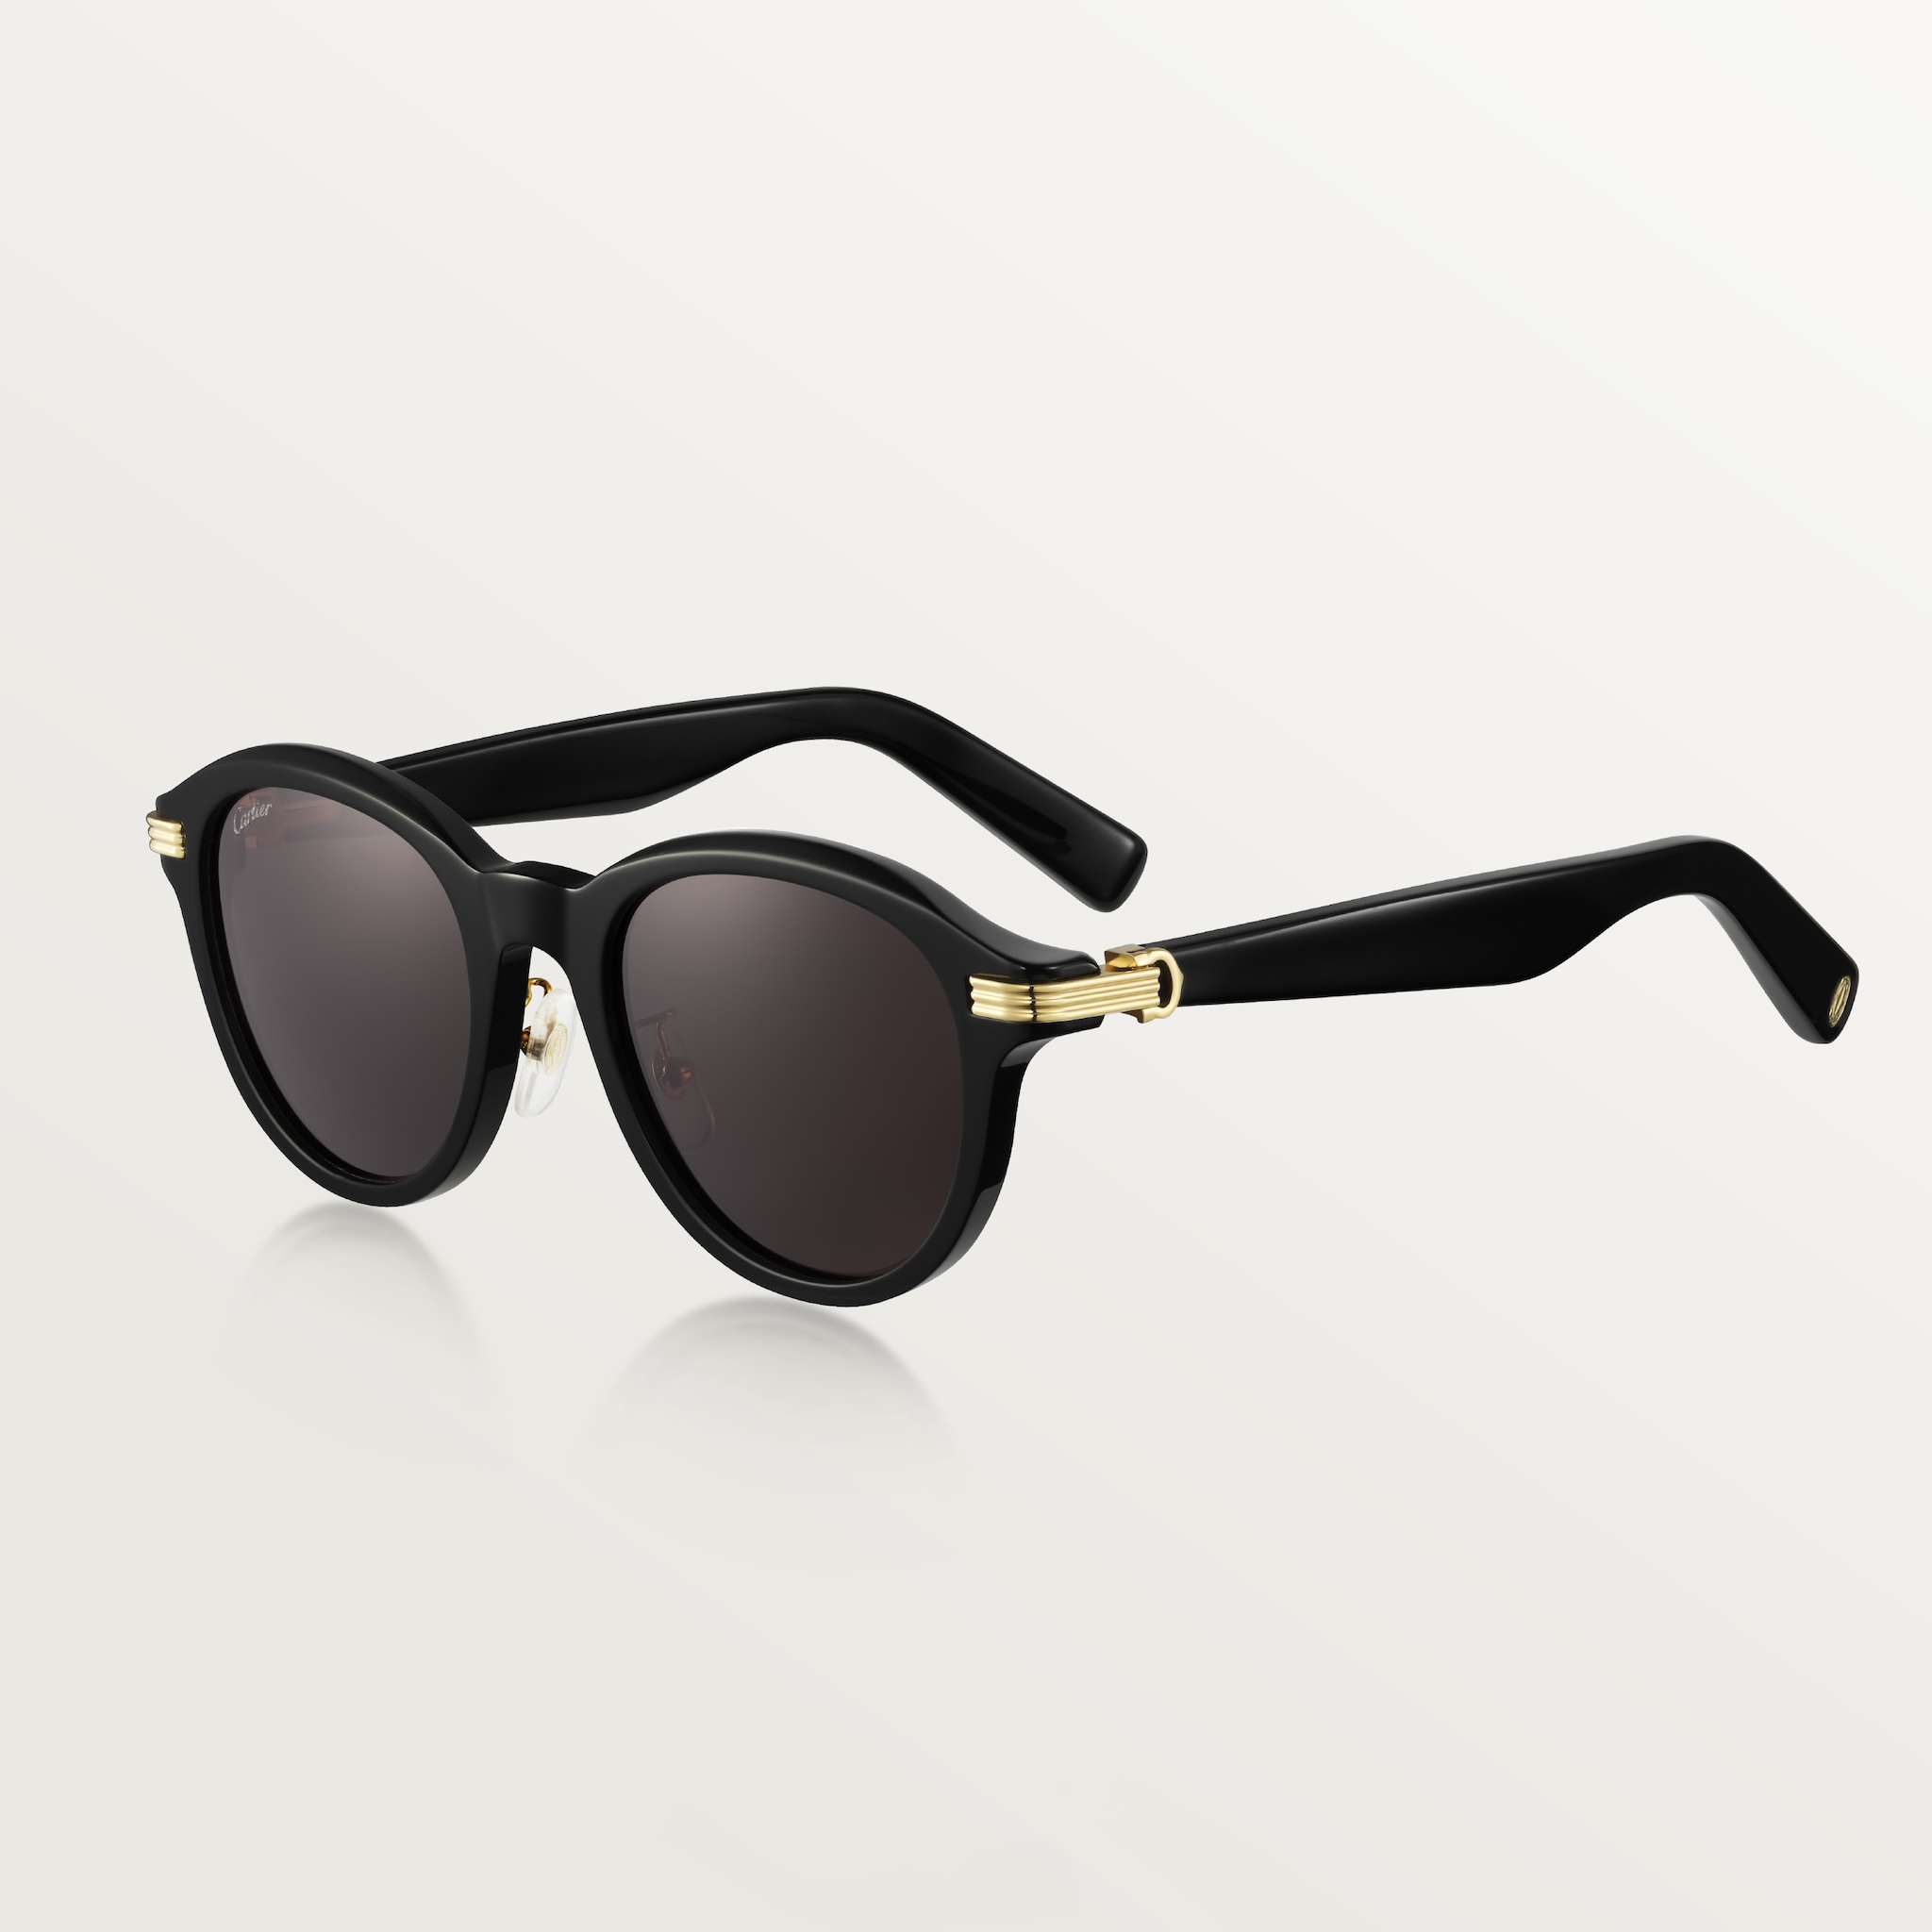 Première de Cartier sunglassesBlack acetate, grey lenses